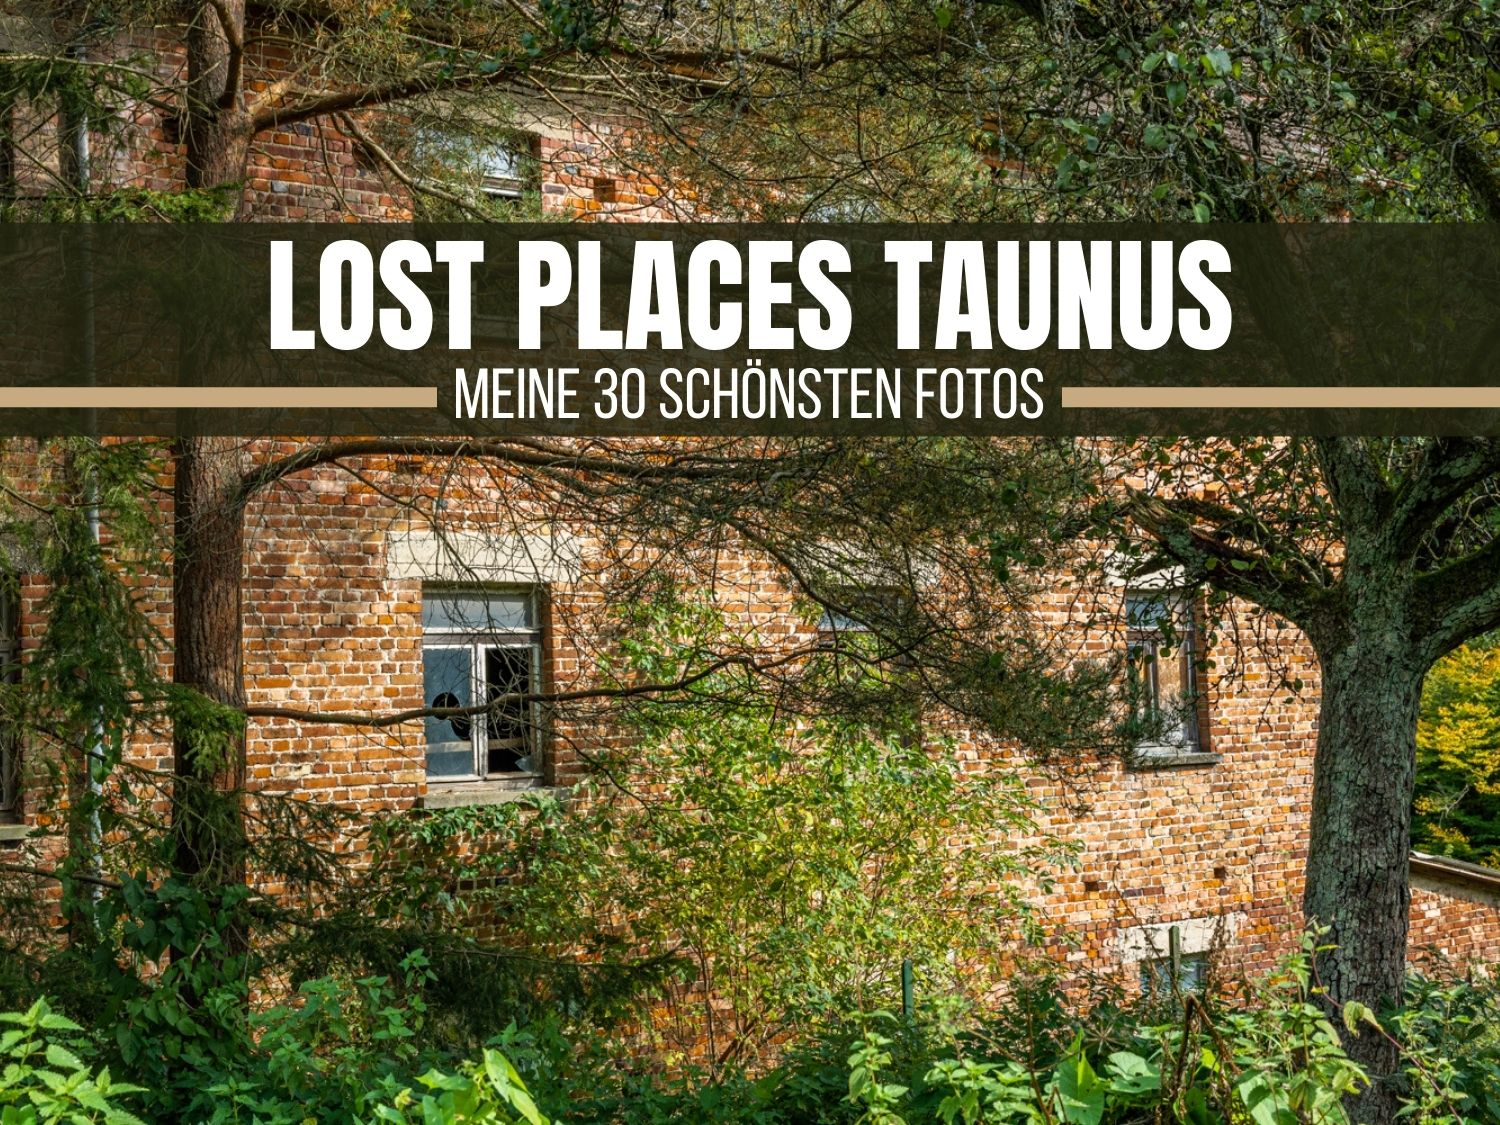 Lost Places Taunus